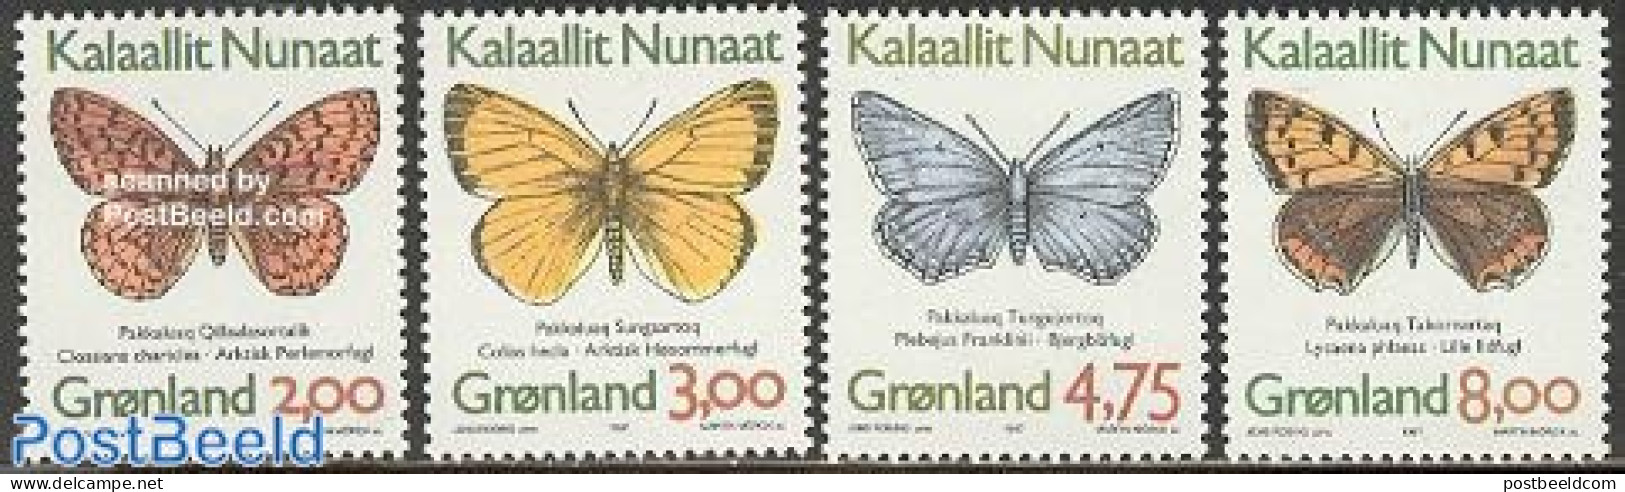 Greenland 1997 Butterflies 4v, Normal Paper (from Booklet), Mint NH, Nature - Butterflies - Neufs